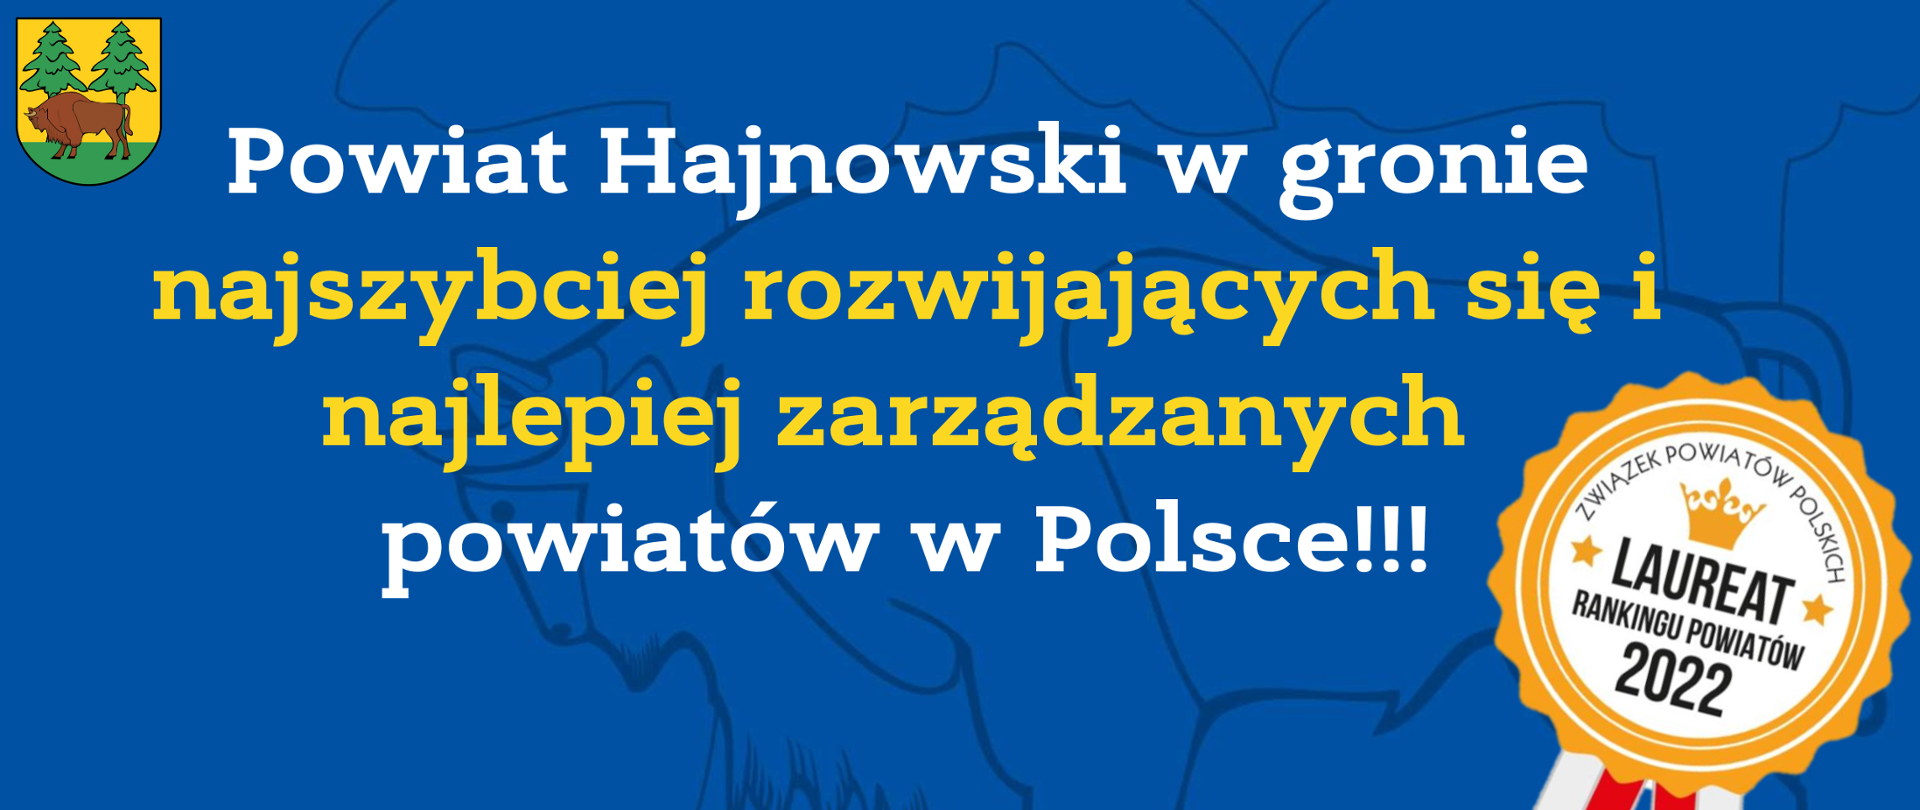 Powiat Hajnowski w gronie najszybciej rozwijających się i najlepiej zarządzanych
powiatów w Polsce!!! Obok napisu odznaka Laureata Rankingu Powiatów 2022